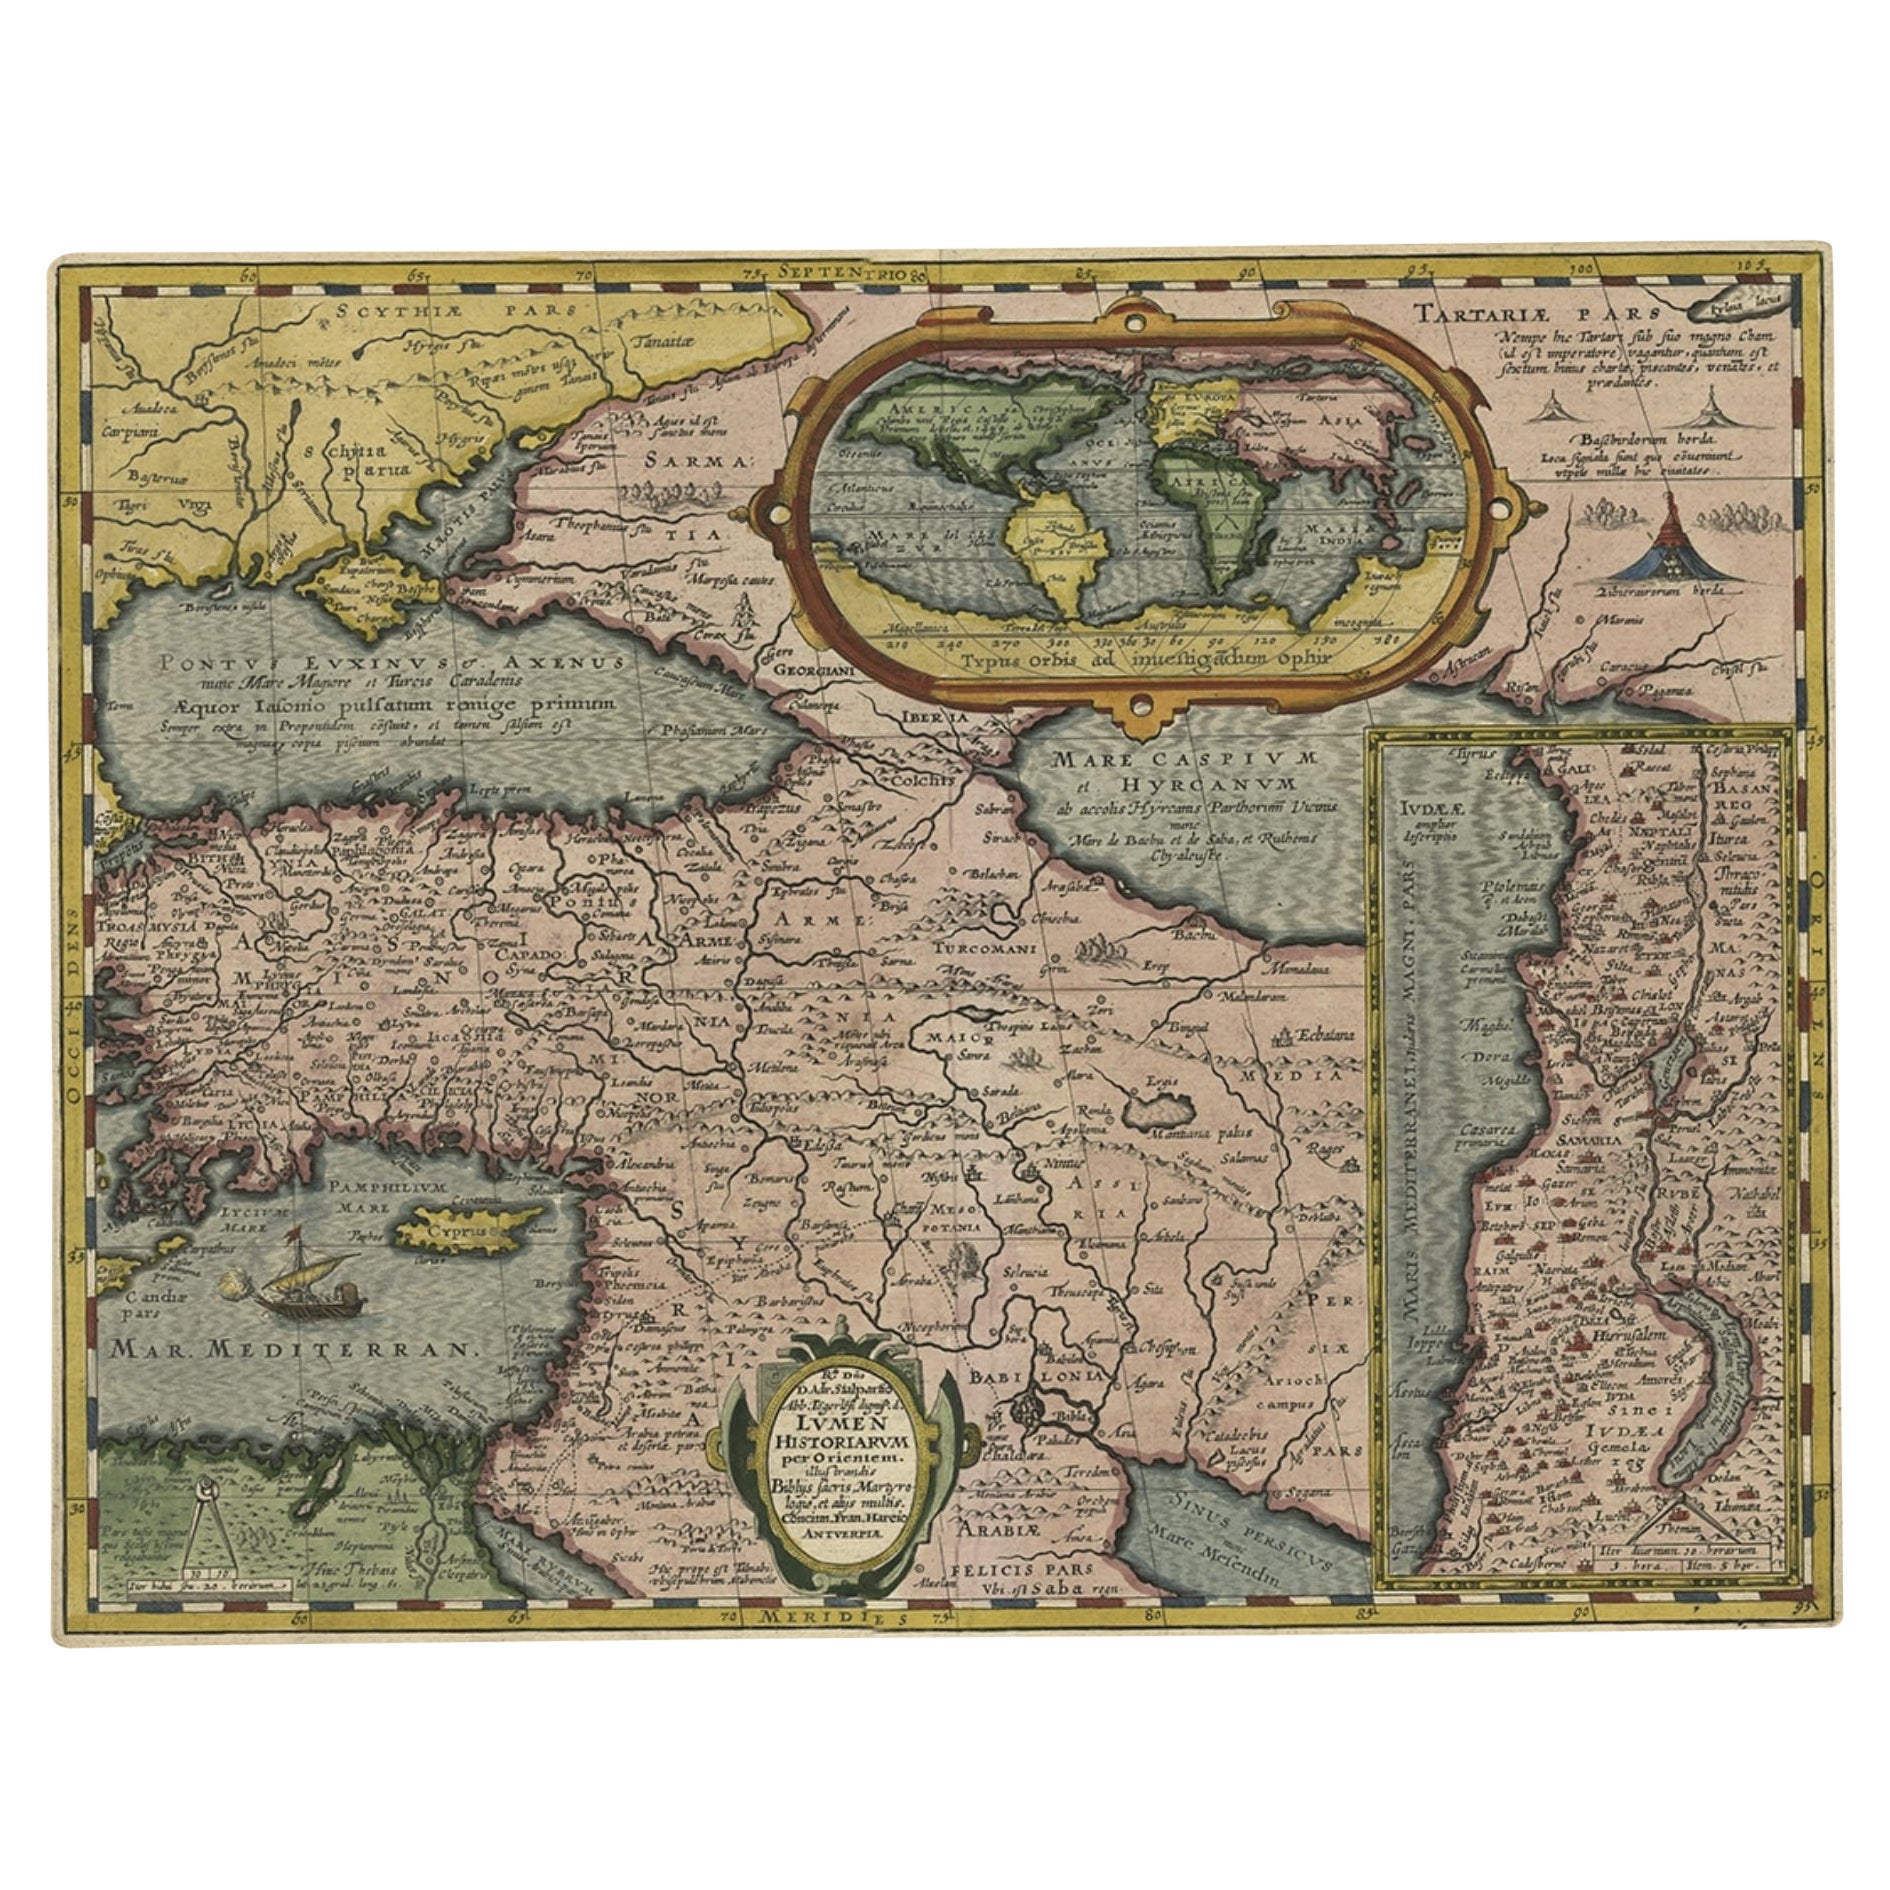 Rare carte ancienne du Moyen-Orient du Moyen-Orient, entourée d'un texte latin, 1624